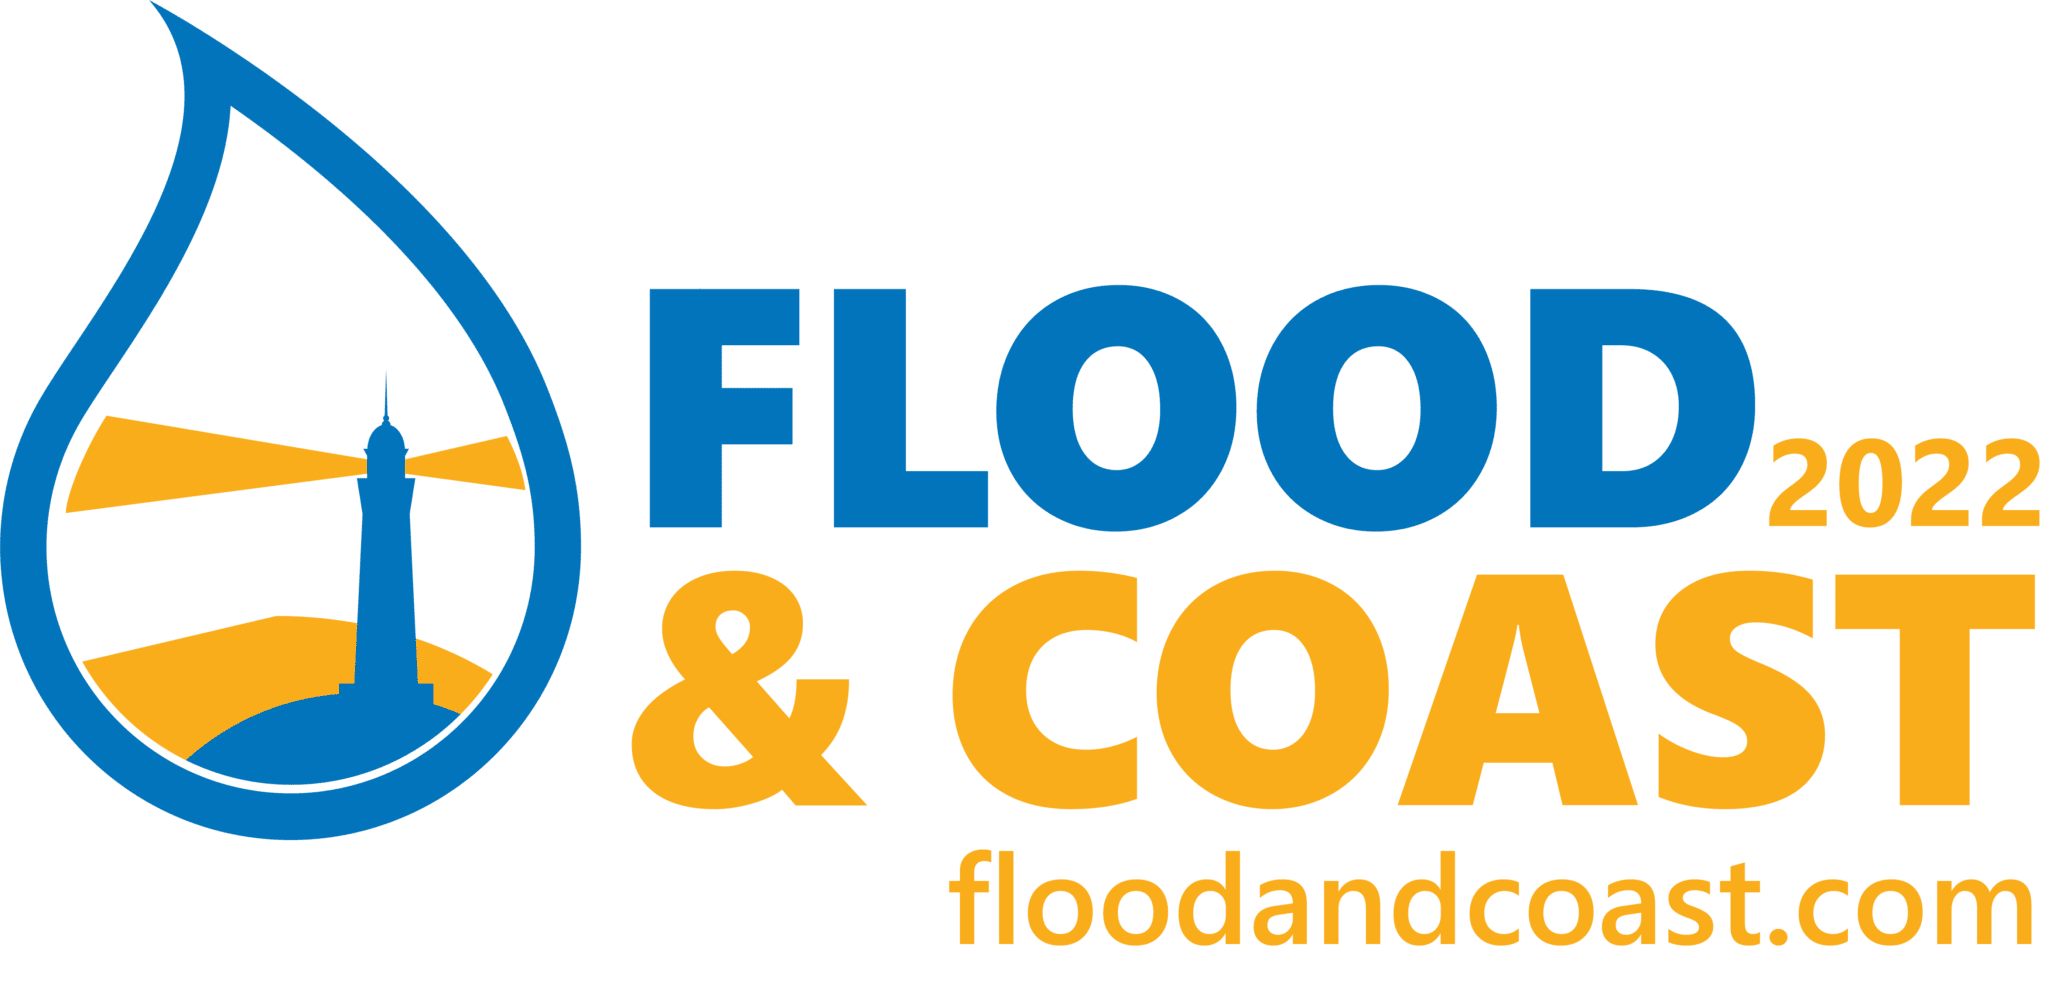 Flood & Coast 2022